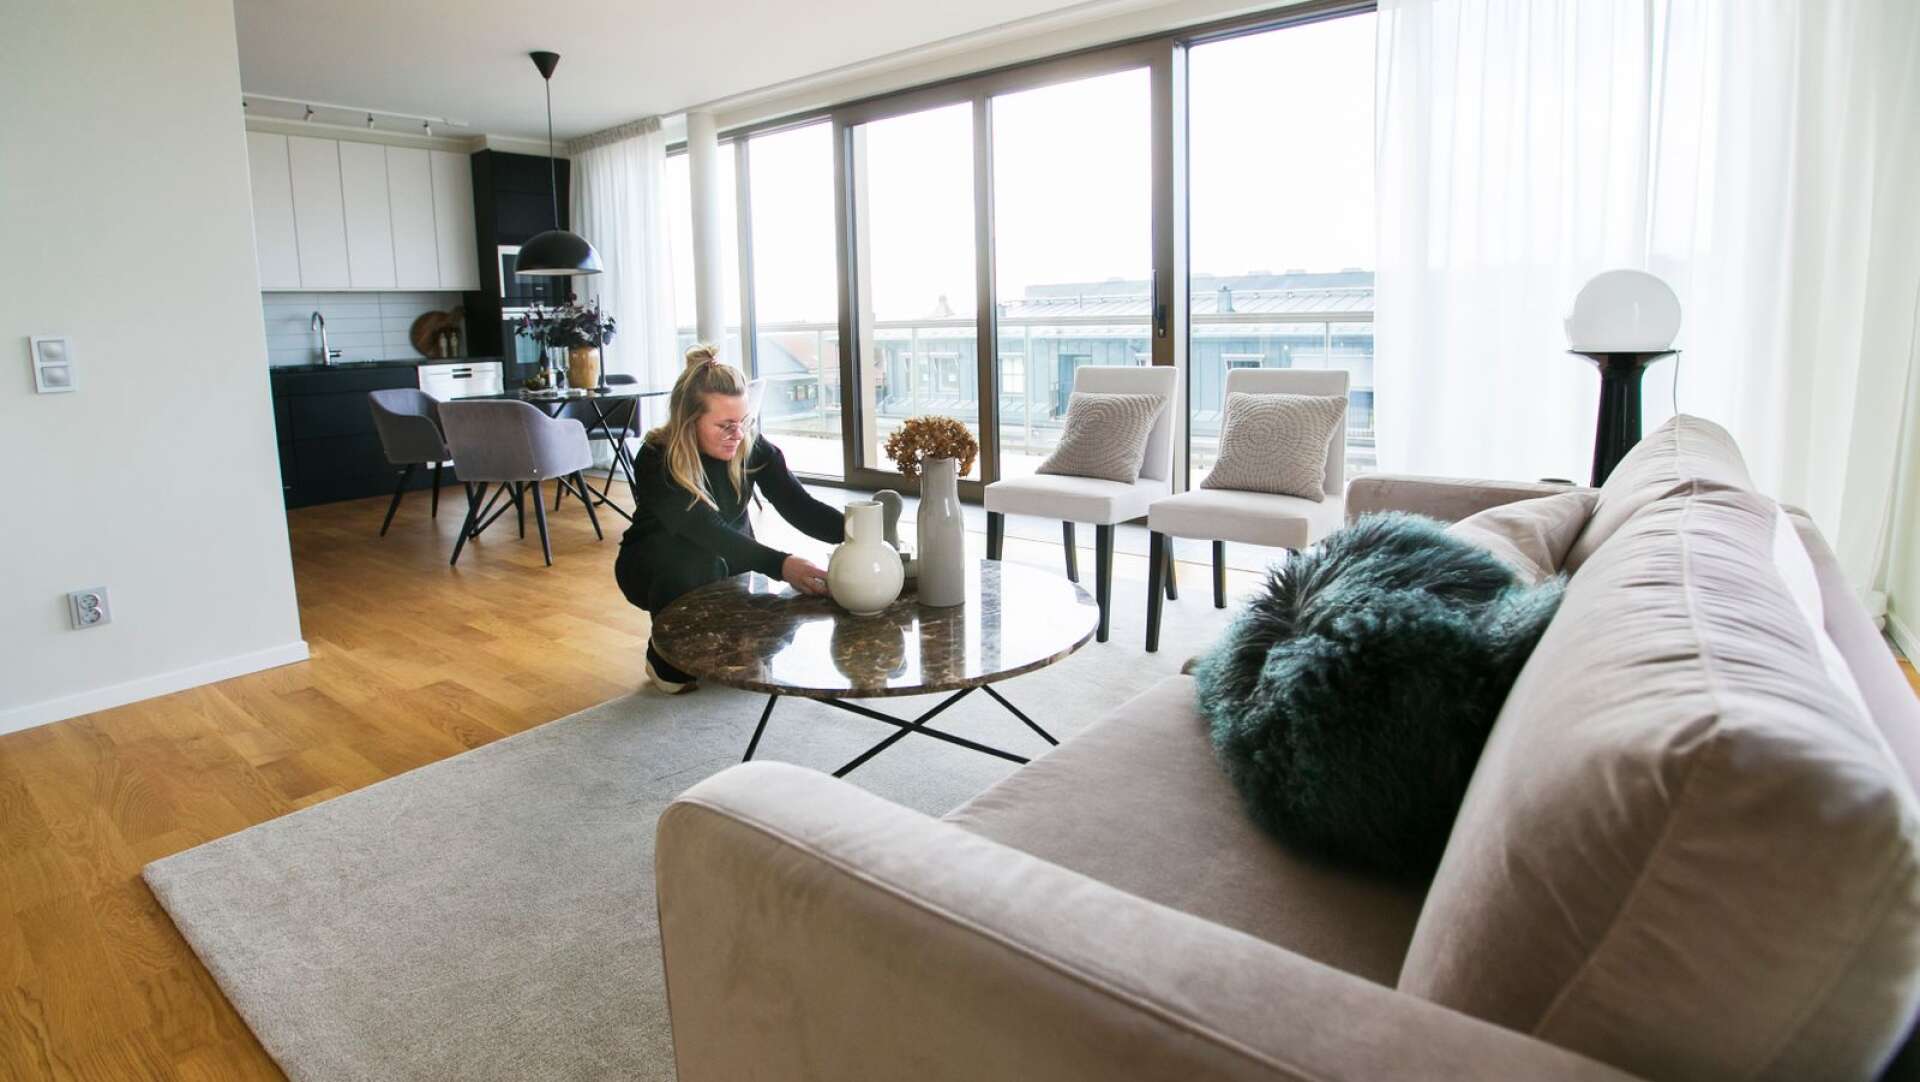 Inredning pågår. Sofia Widjeback, inredare och homestylning-expert, fixar till en lägenhet så att den ska se attraktiv ut inför fotografering och visning.